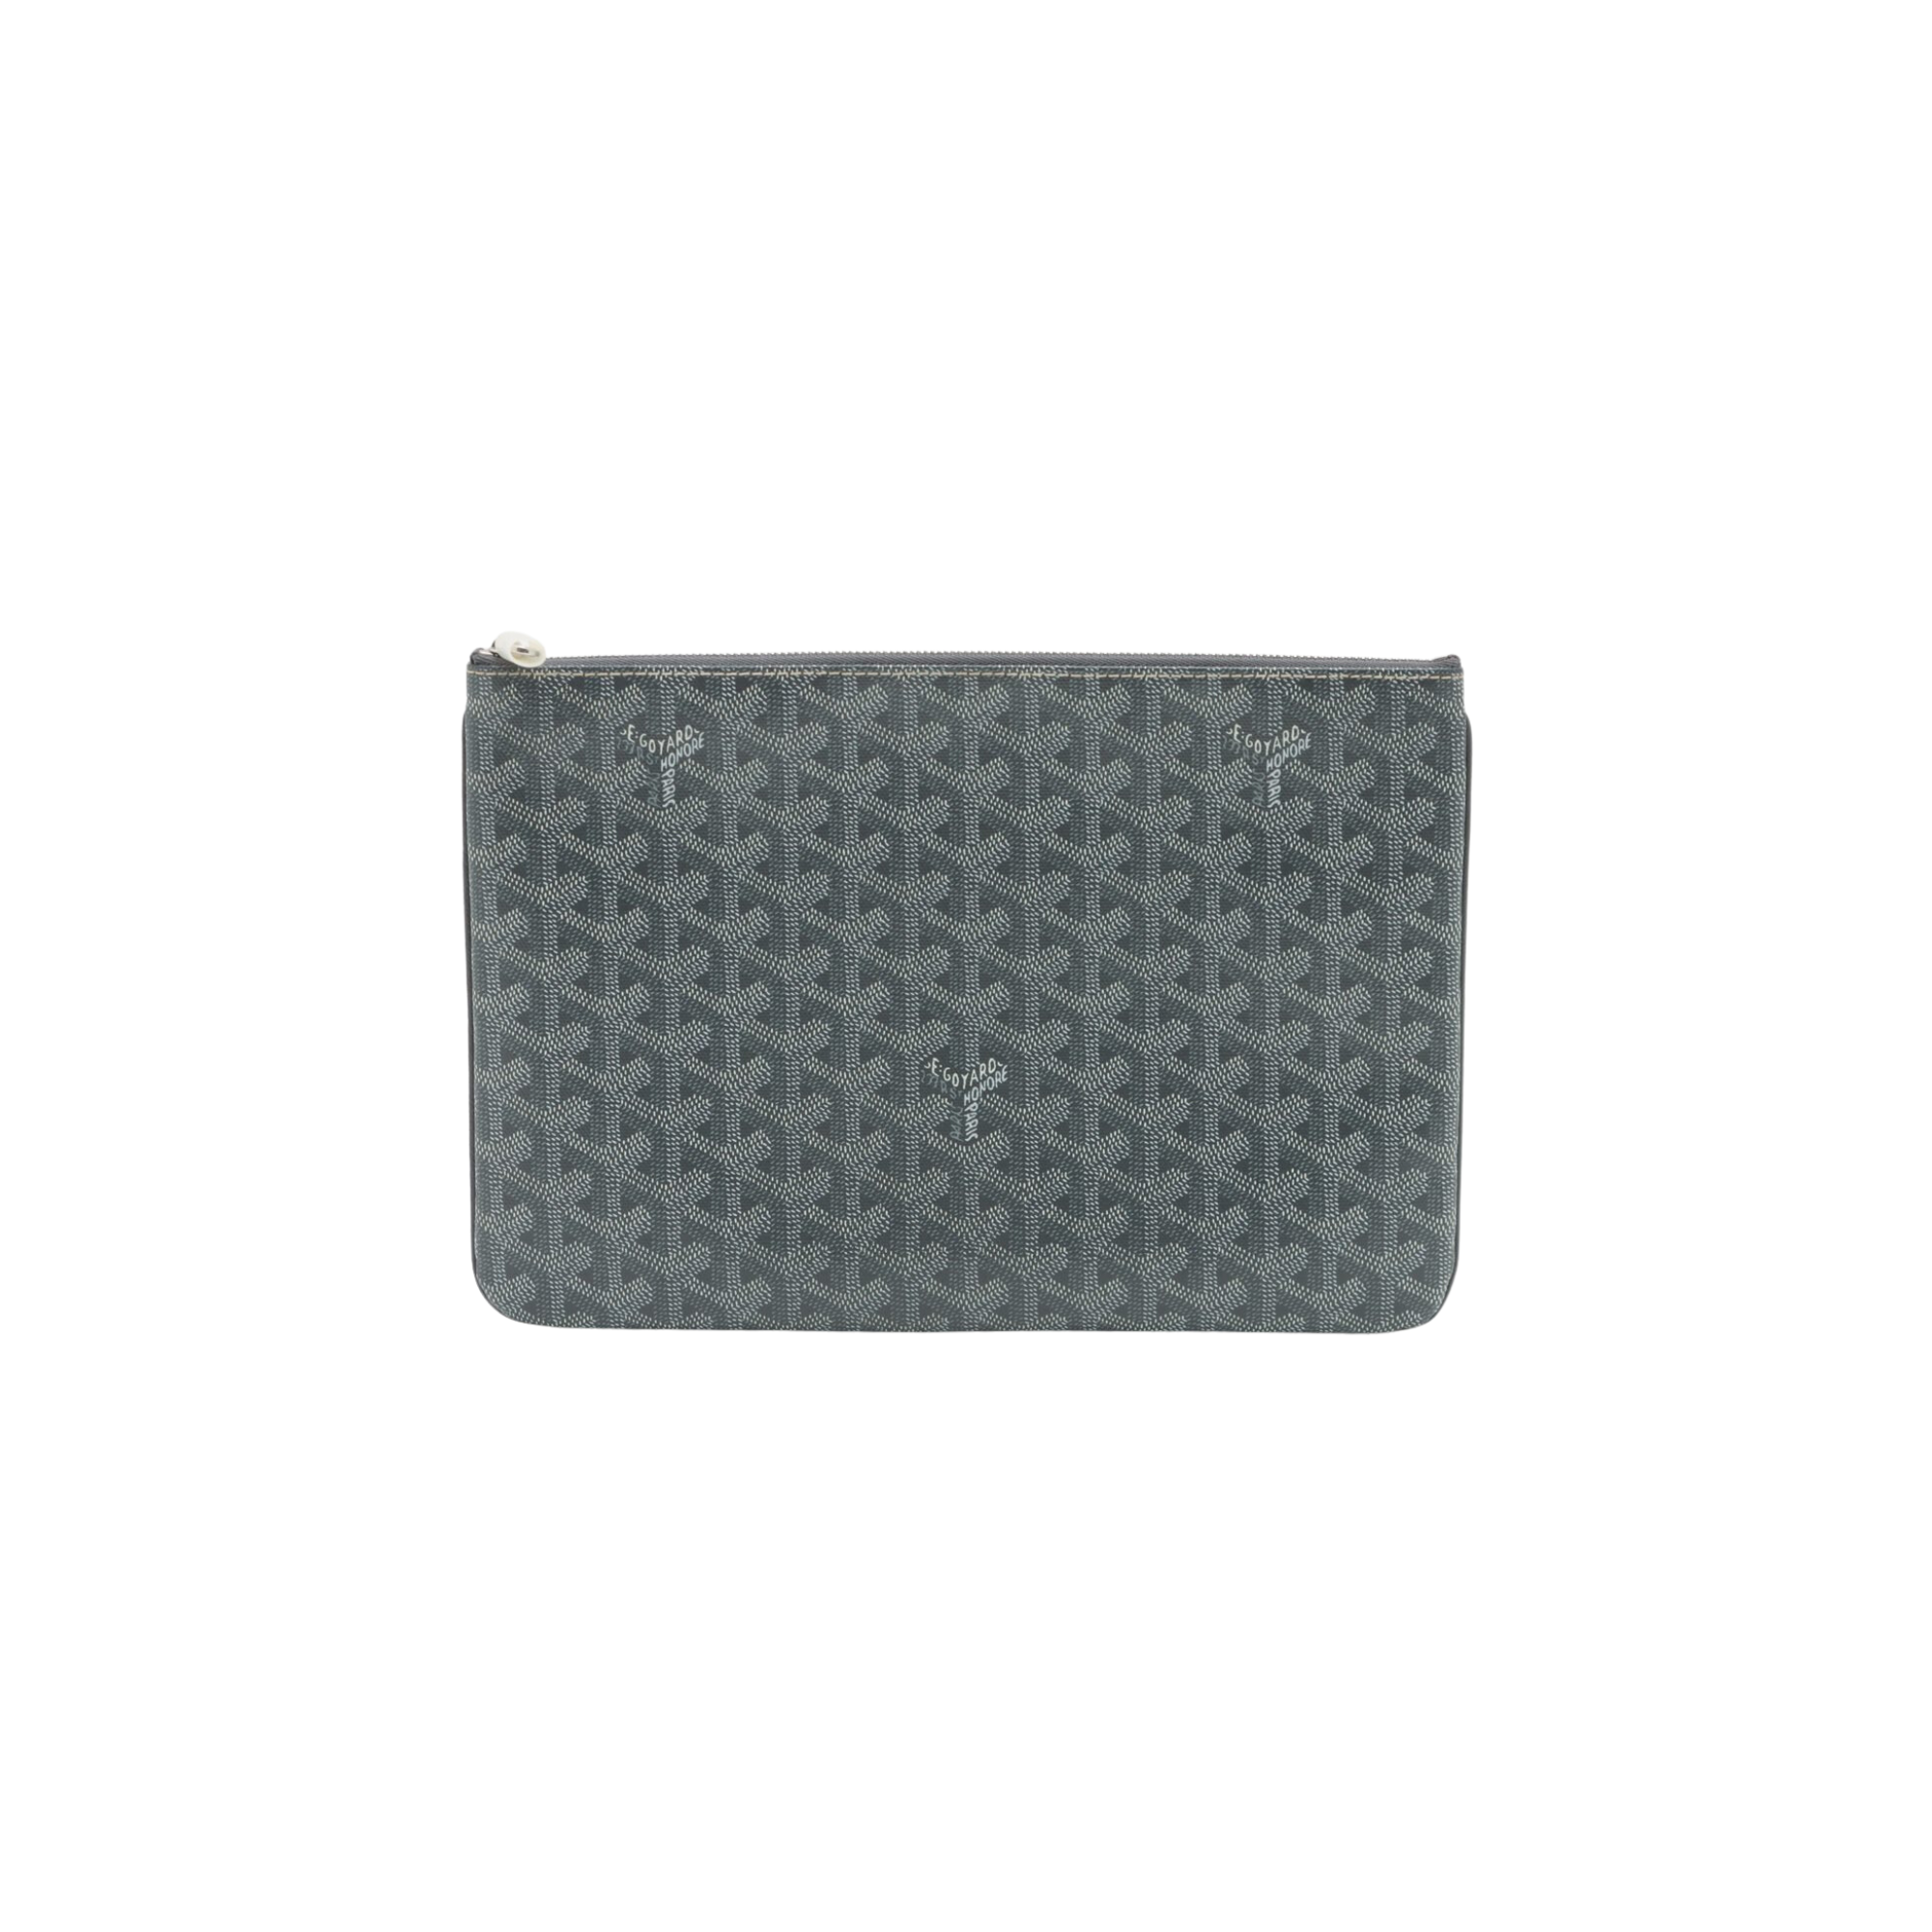 Goyard Goyardine Senat MM - Grey Clutches, Handbags - GOY35597